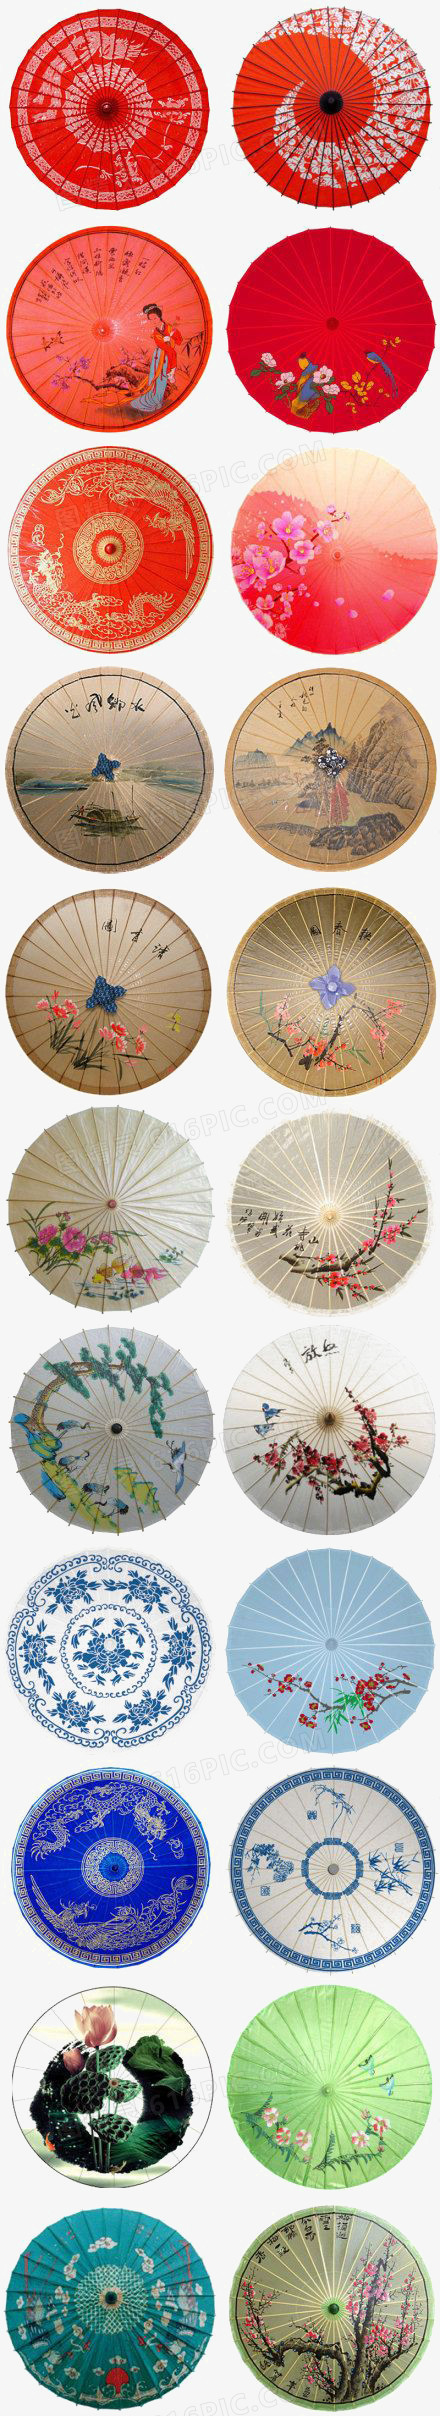 中国风雨伞